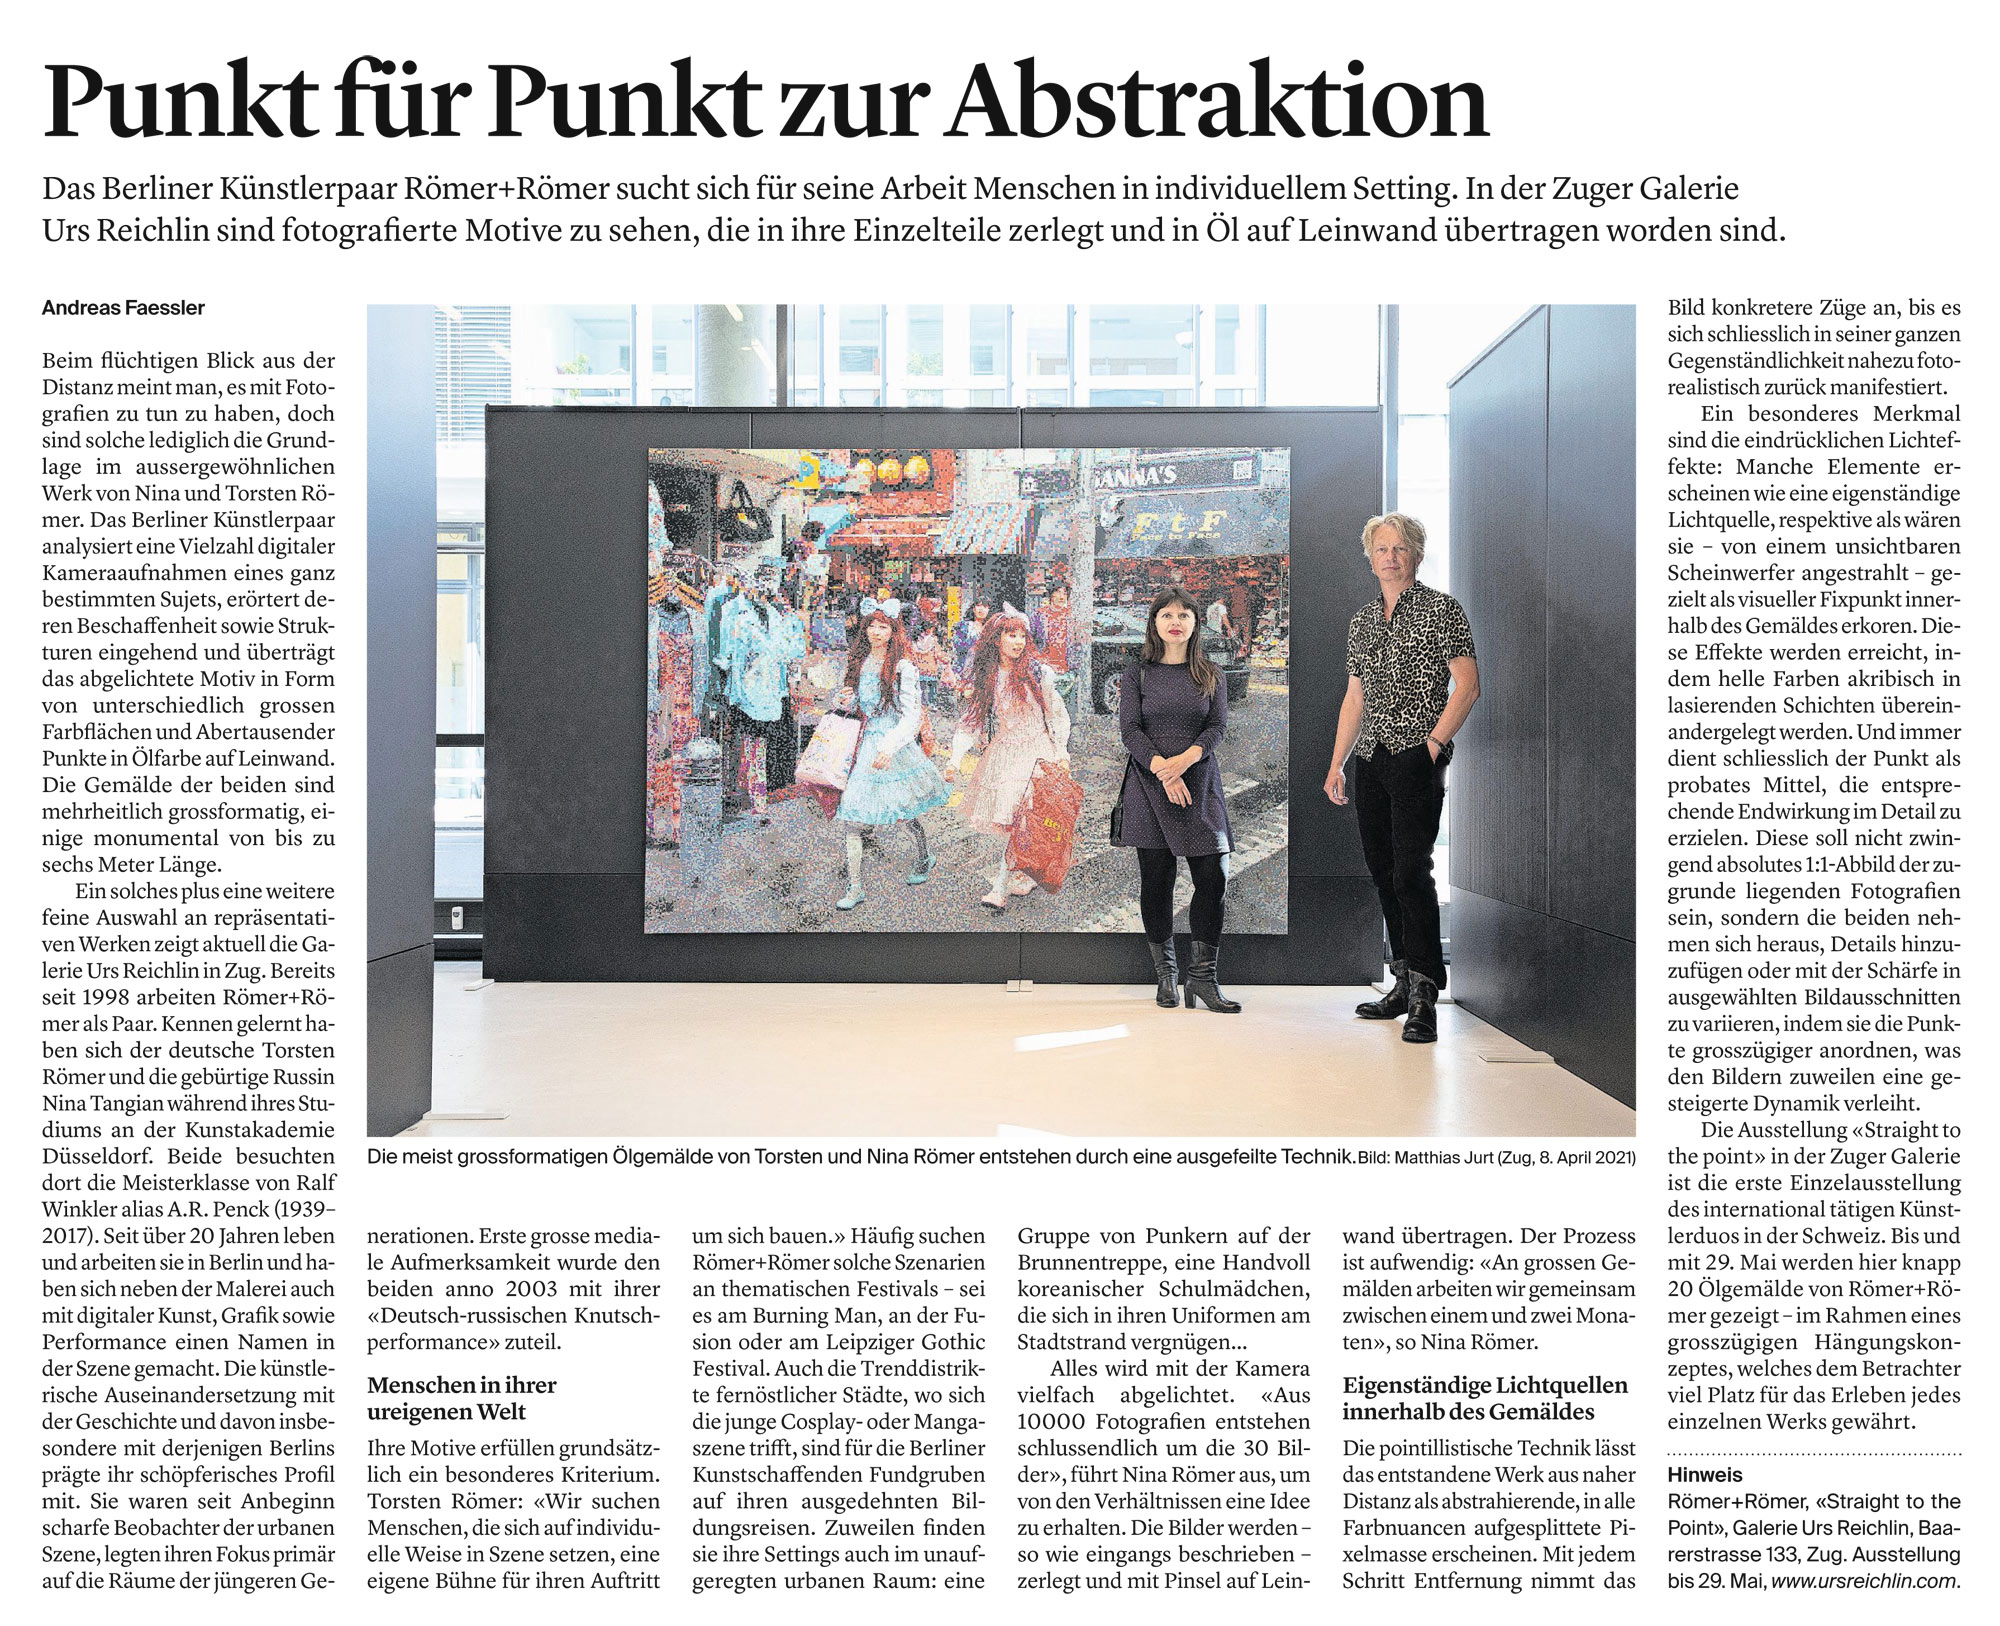 Luzerner Zeitung Römer + Römer, Galerie Urs Reichlin 2021